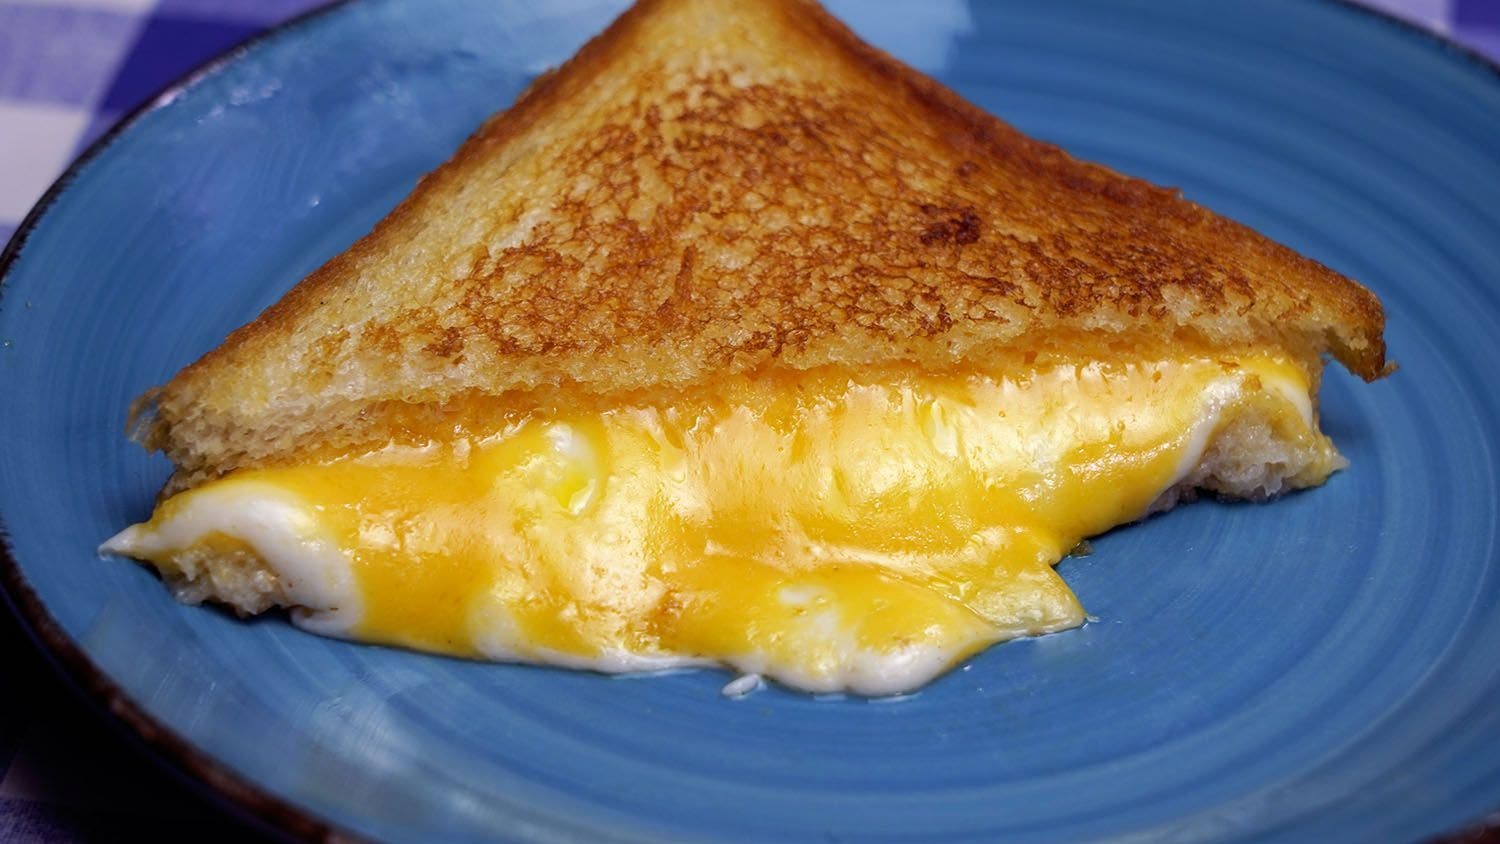 Sandwich de queso fundido doble, un auténtico BOCADO DE PLACER